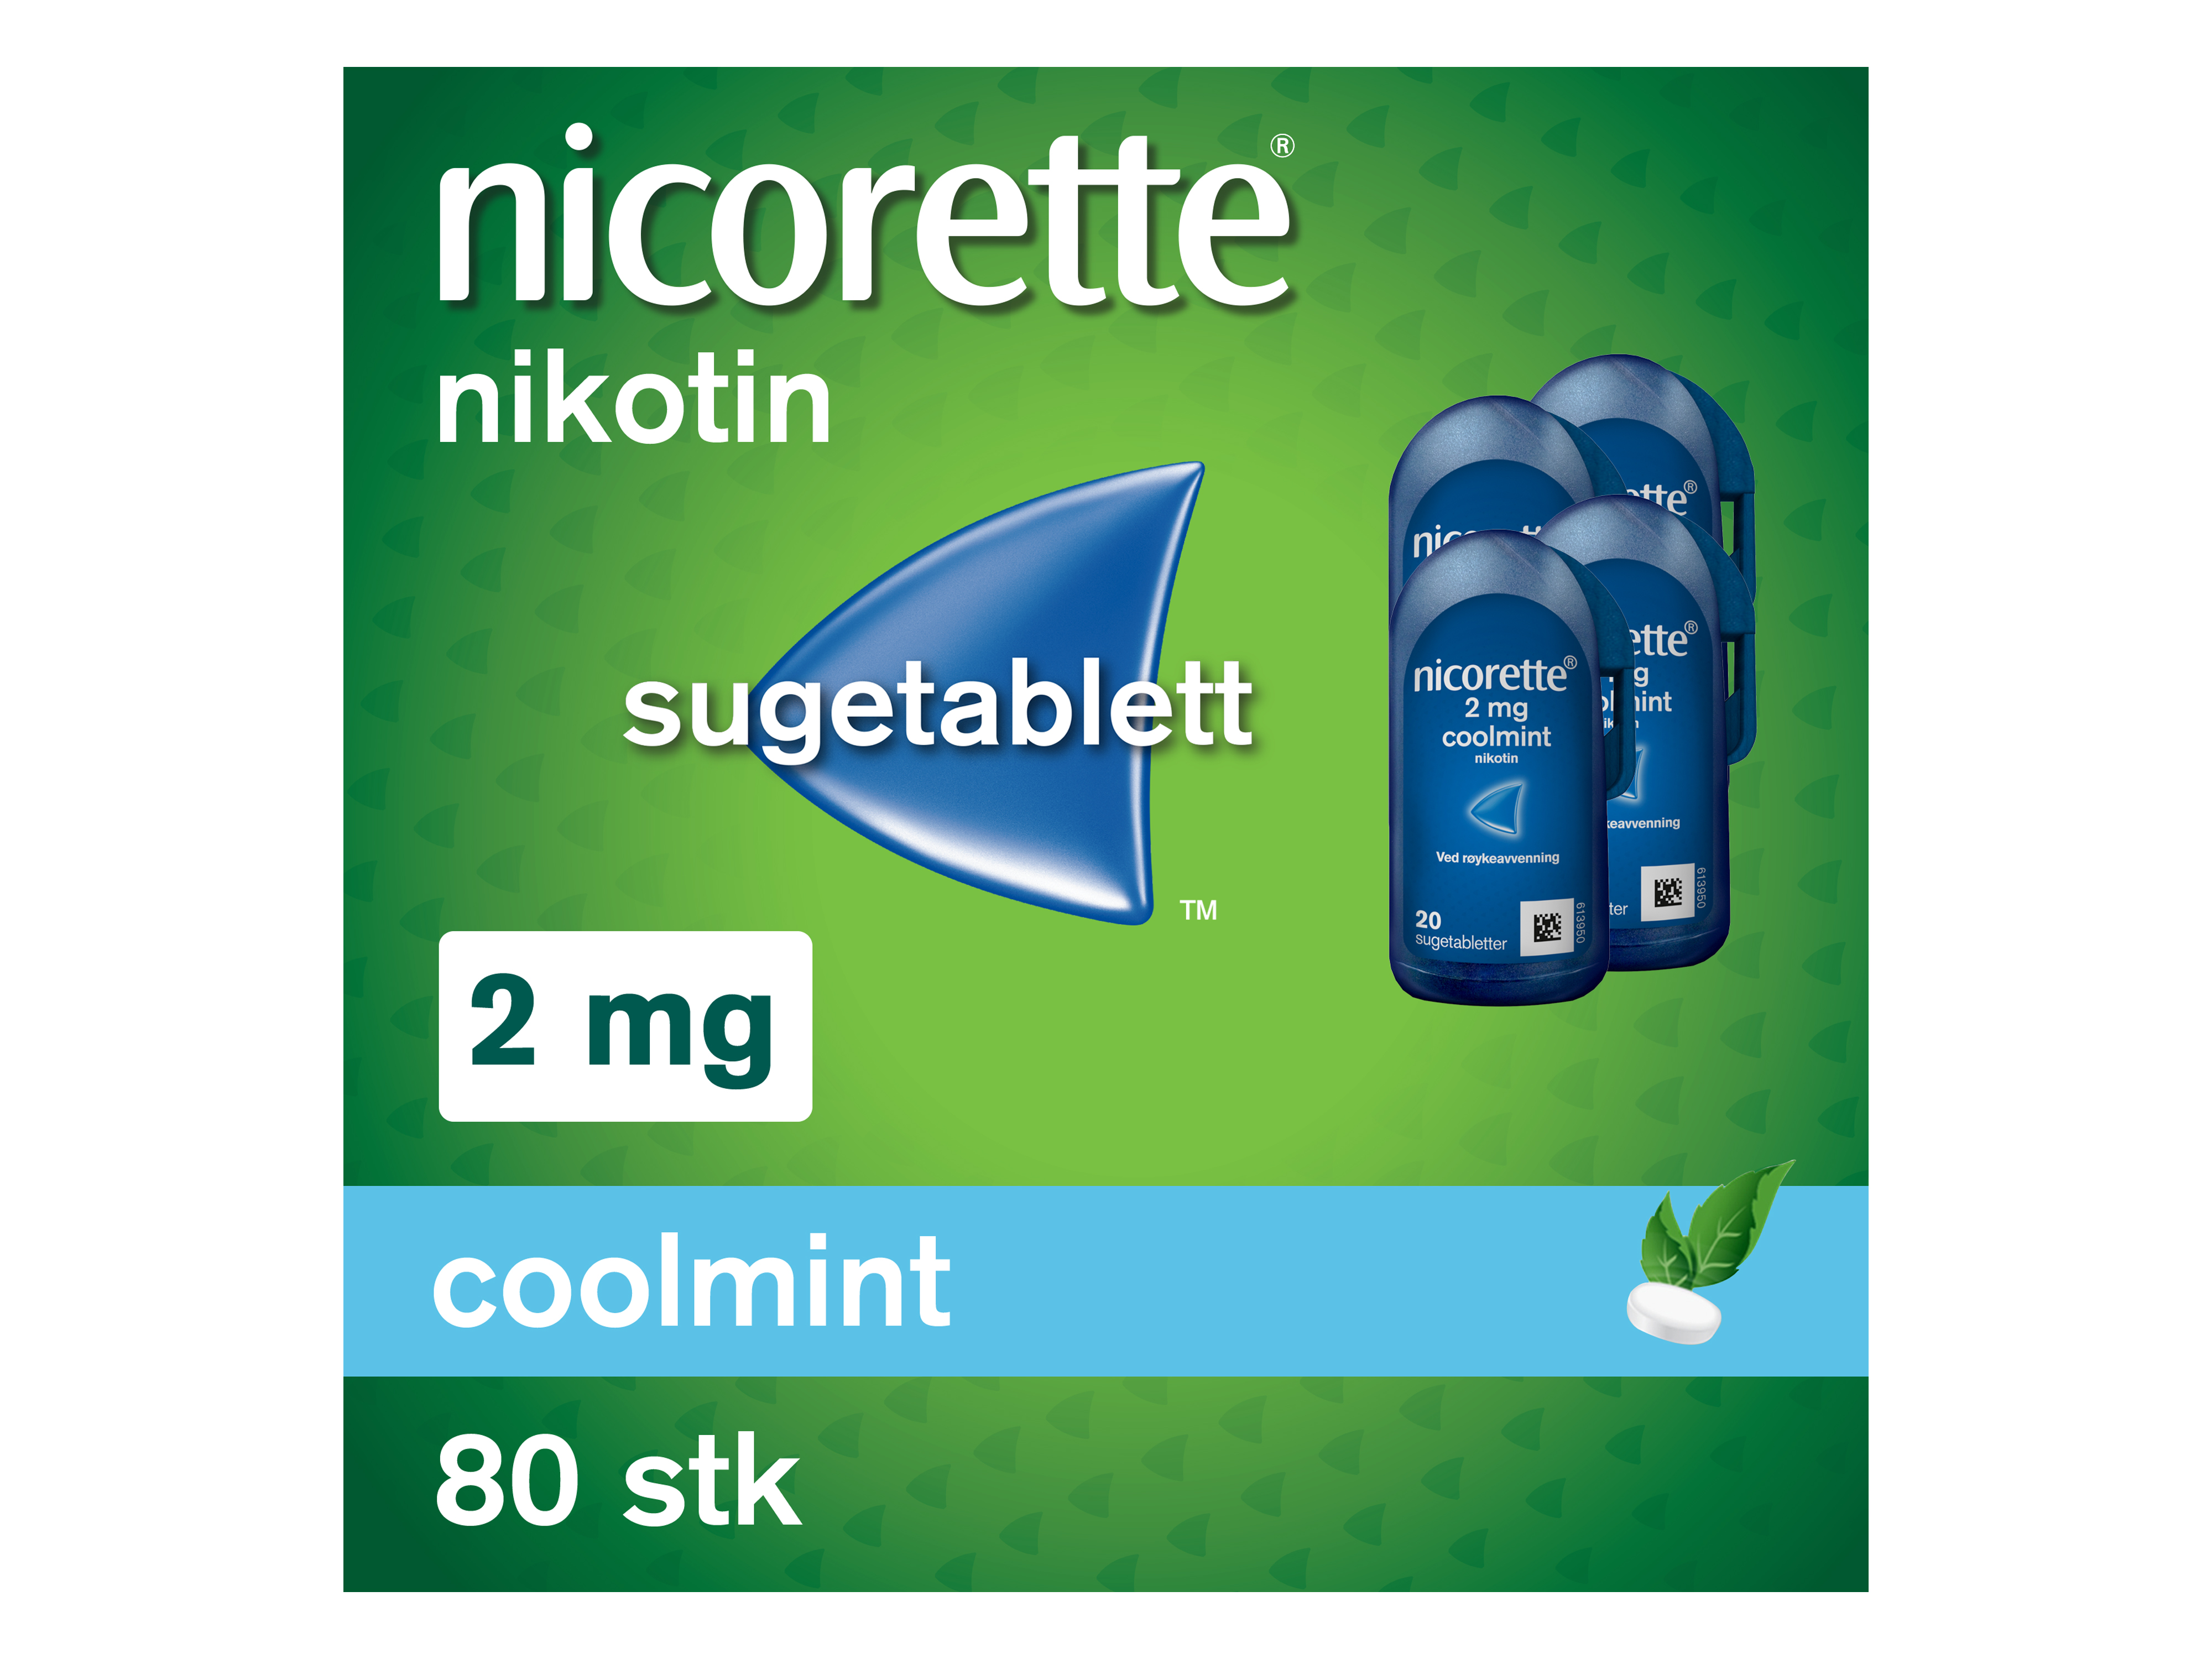 Nicorette Sugetablett, 2 mg nikotin, Coolmint 80 stk., Slutte å røyke